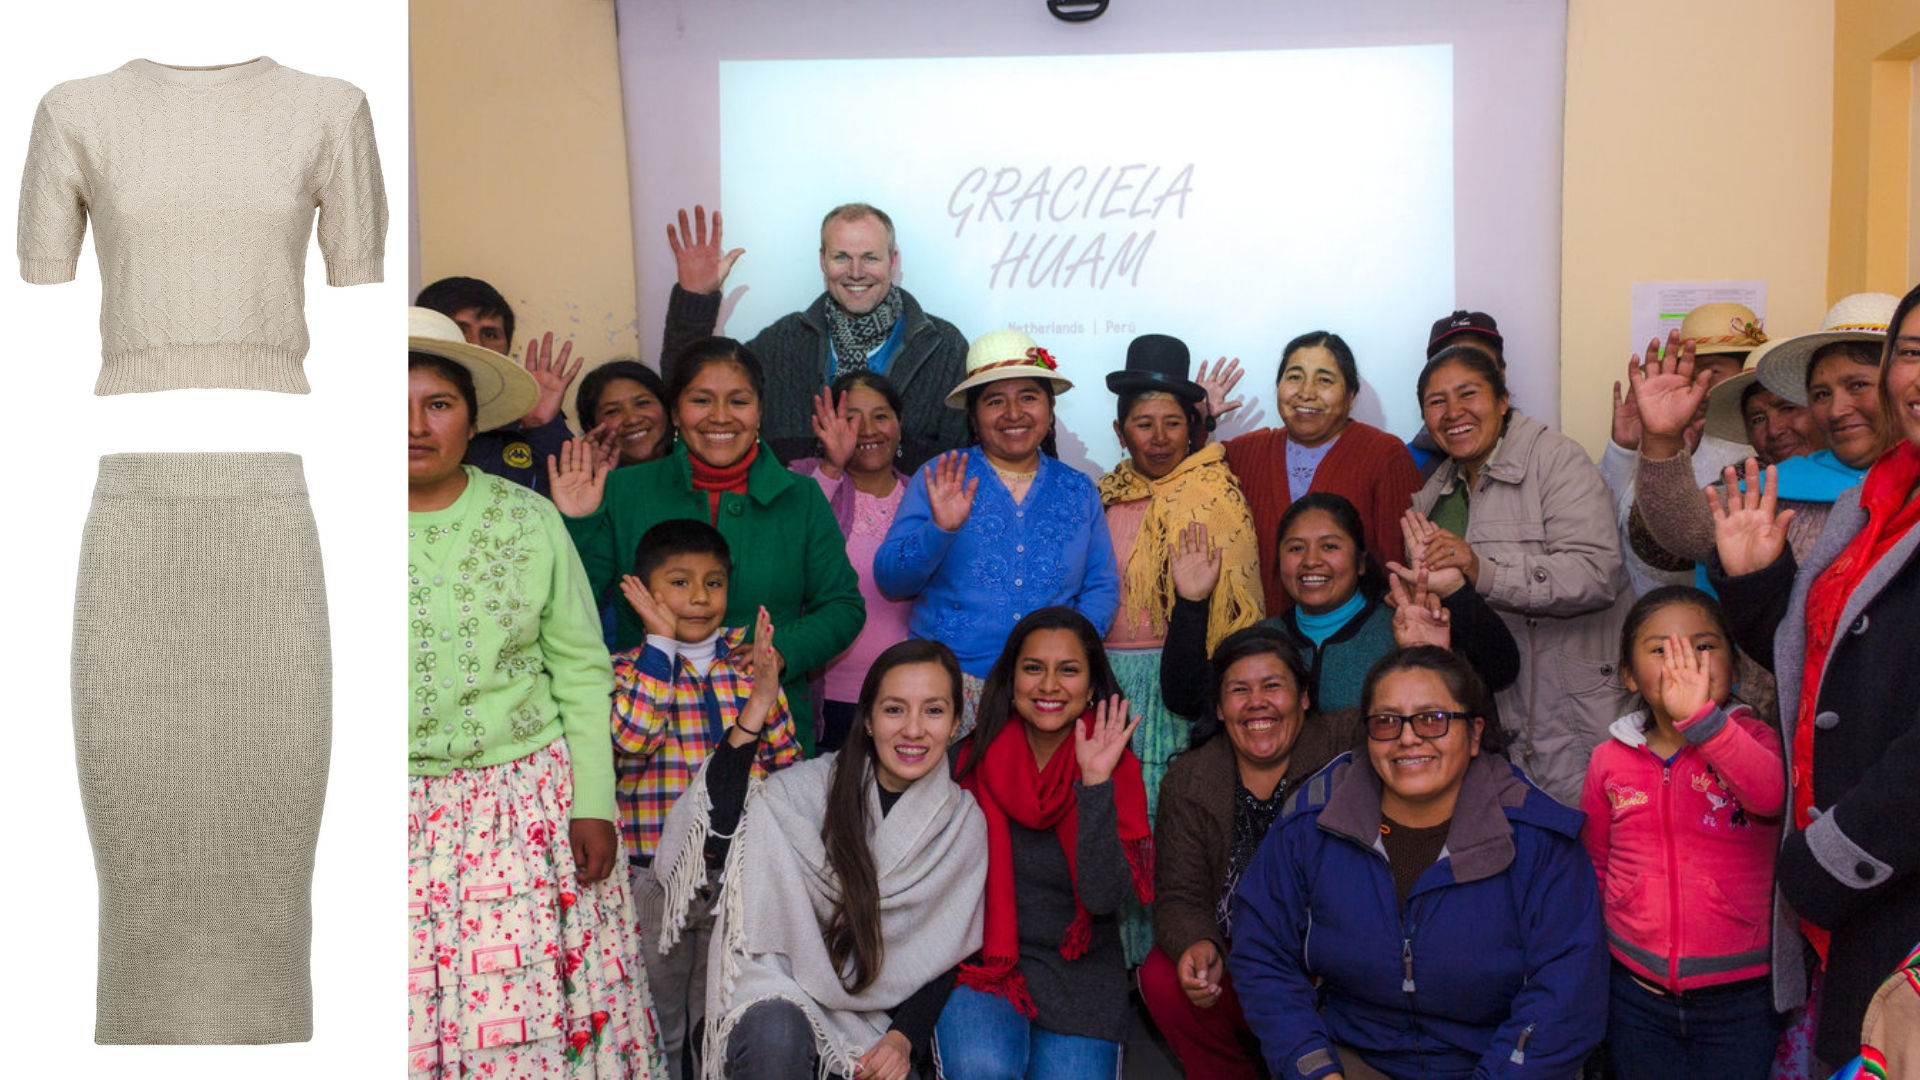 Graciela Huam ethische productie in Peru